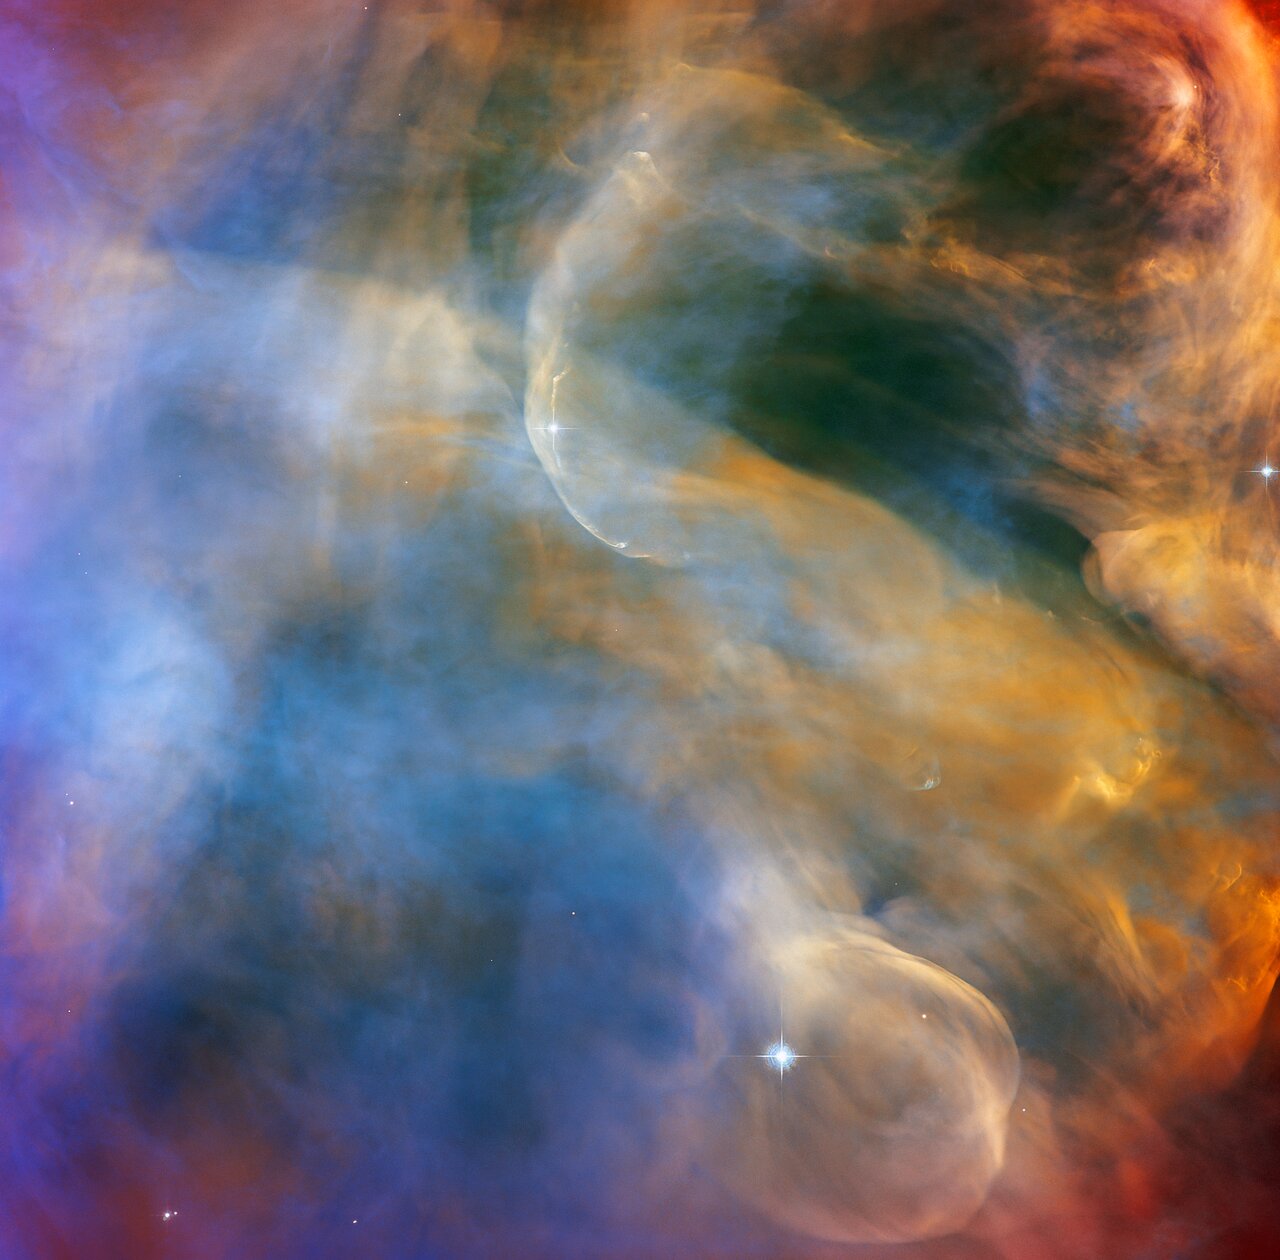 Телескоп «Хаббл» поділився чарівним знімком хмар, що світяться Туманності Оріону